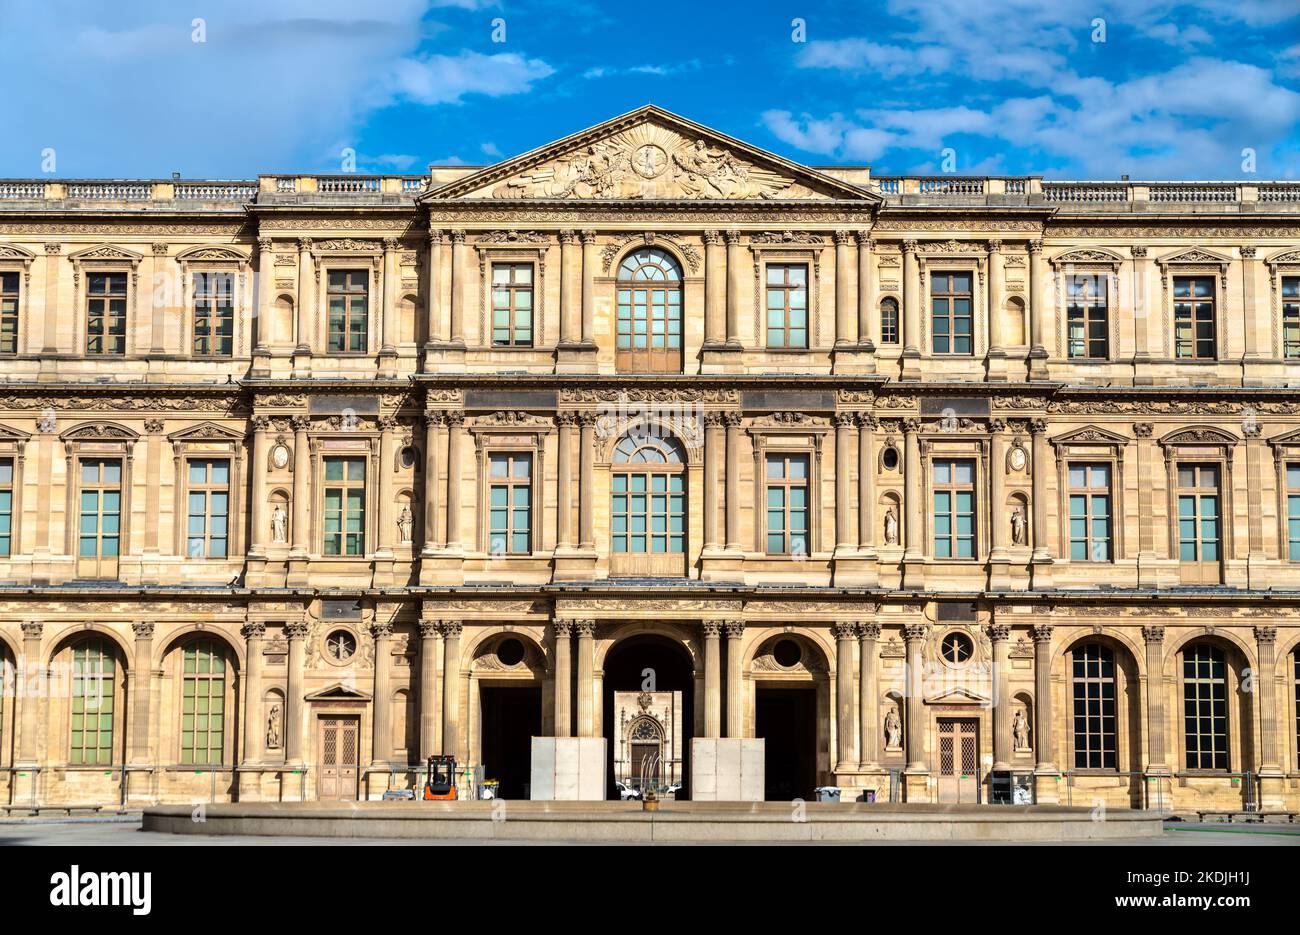 Le Musée du Louvre, une attraction touristique majeure de Paris, France Banque D'Images